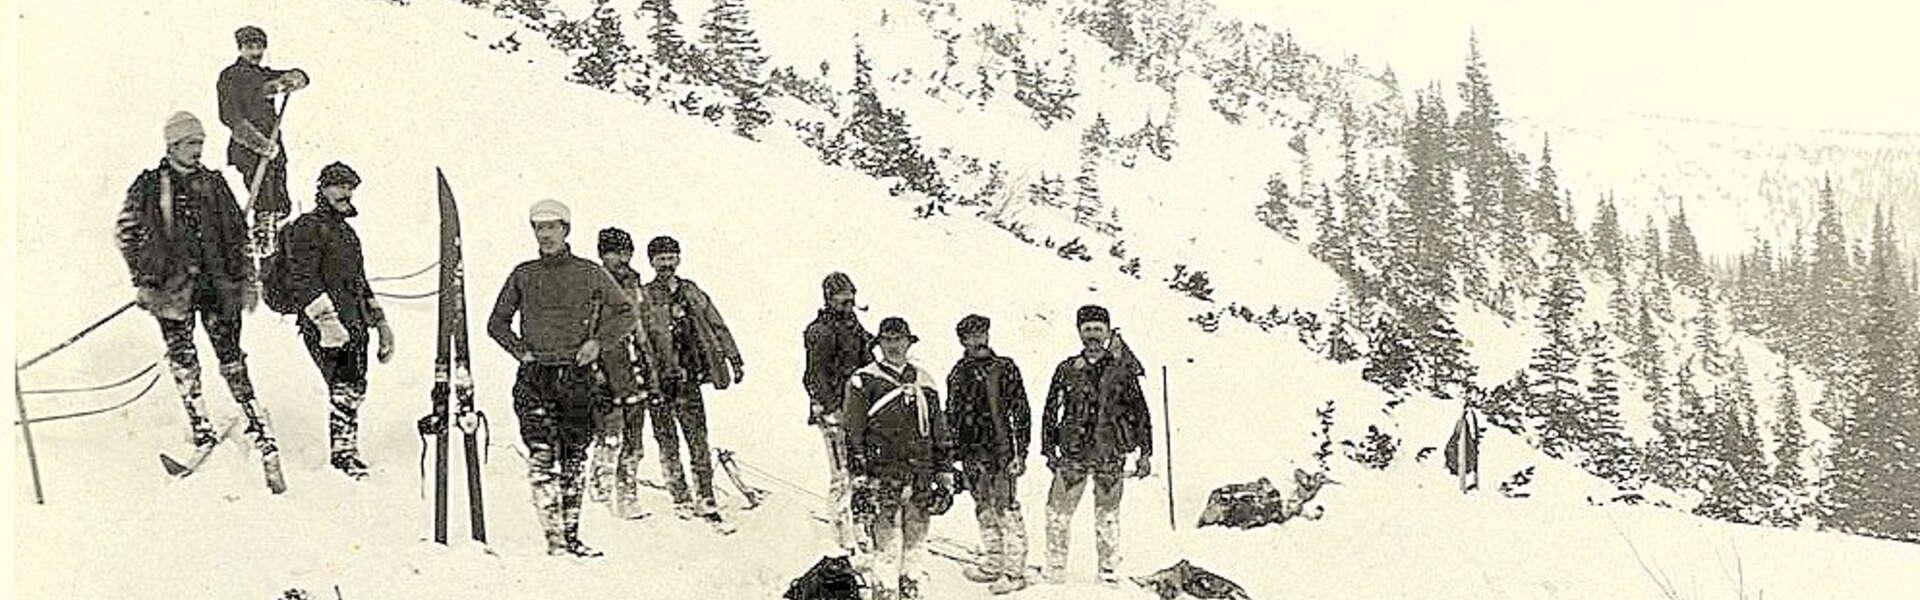 Grupa mężczyzn w strojach z początku wieku XX stojących na śniegu